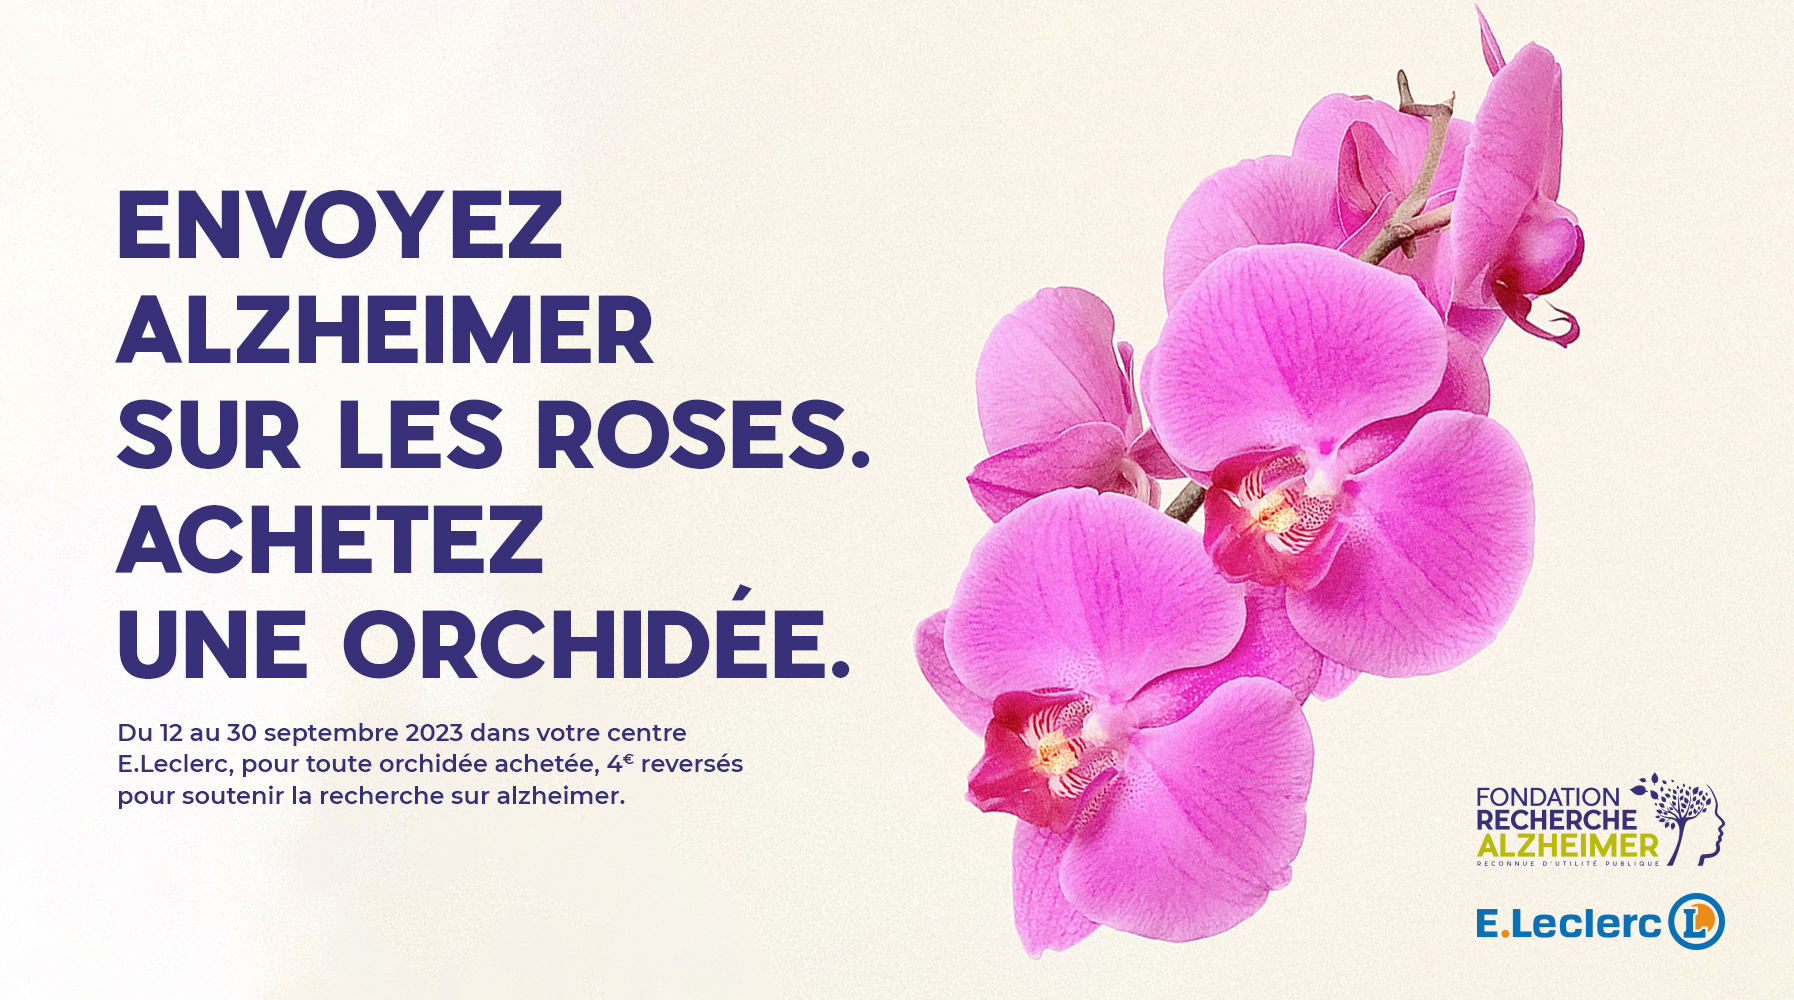 France - E.Leclerc et la Fondation Recherche Alzheimer renouvellent l'opération :   Une orchidée pour la mémoire  